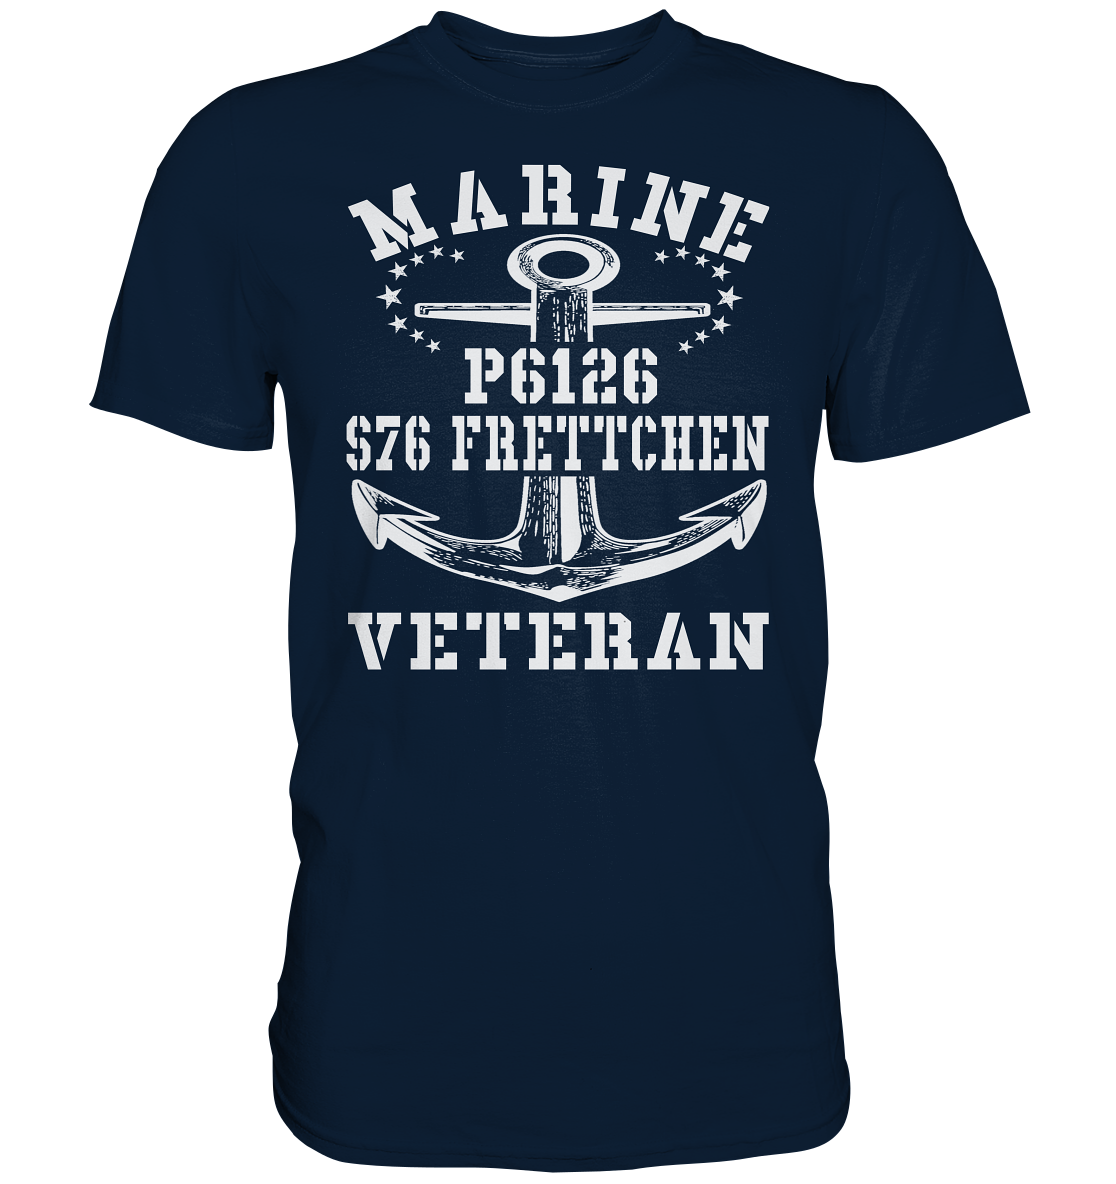 FK-Schnellboot P6126 FRETTCHEN Marine Veteran - Premium Shirt